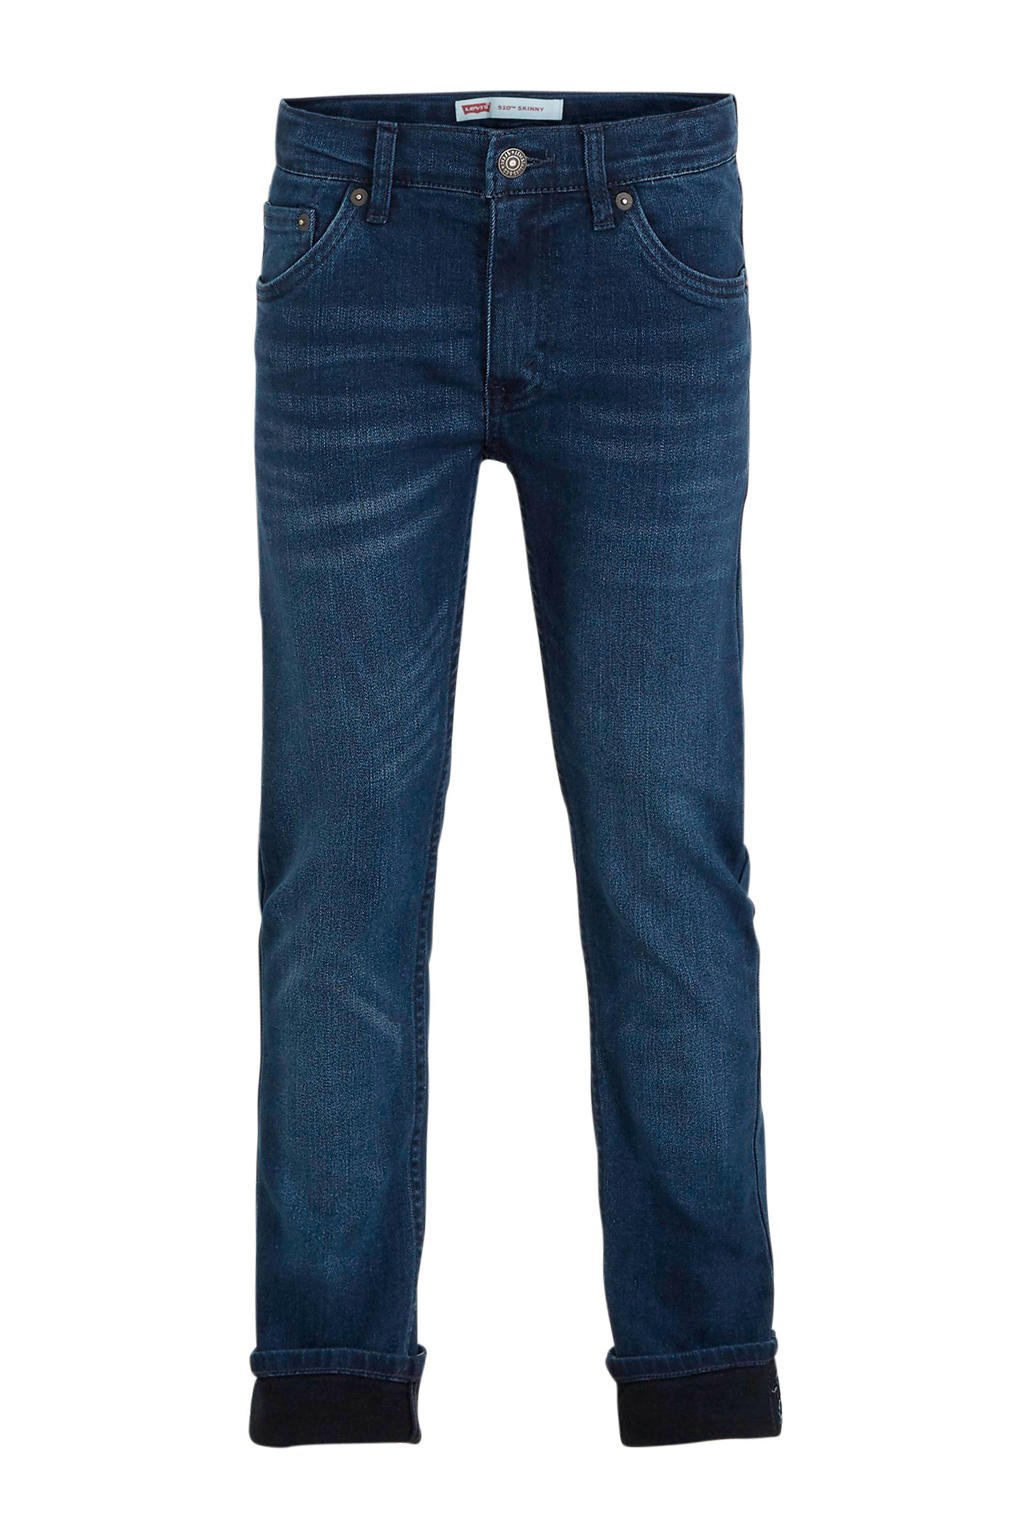 Donkerblauwe jongens Levi's Kids skinny jeans van stretchdenim met regular waist en rits- en knoopsluiting